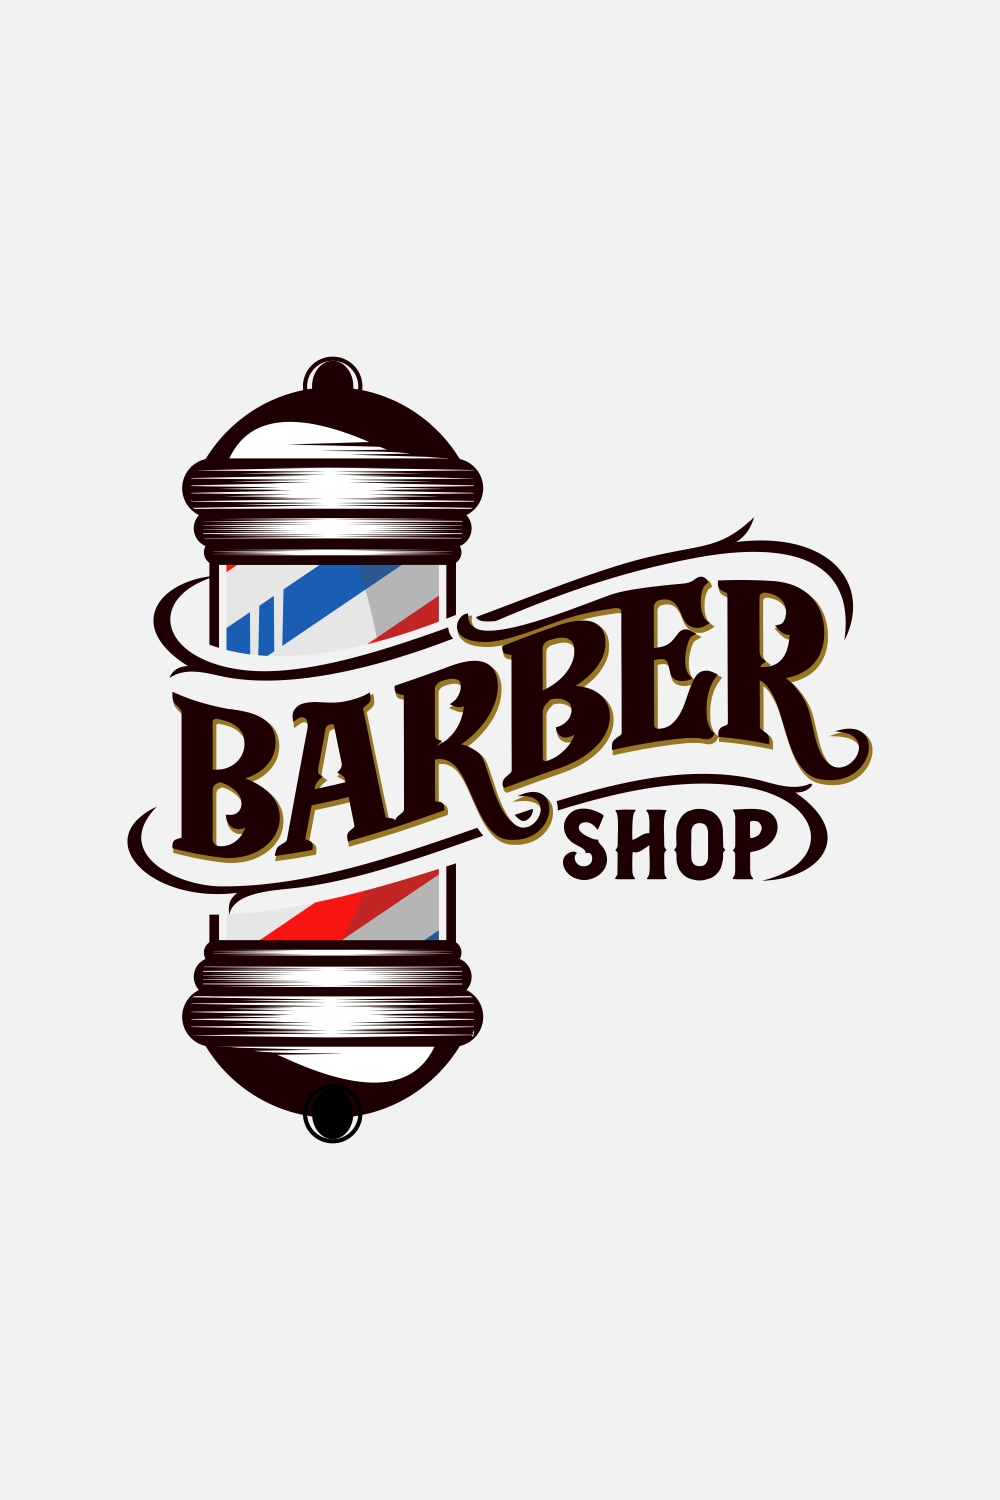 Vintage barber shop Logo, haircut salon retro design, Old hairdresser badge with barber pole, scissors, razor blade vector pinterest preview image.